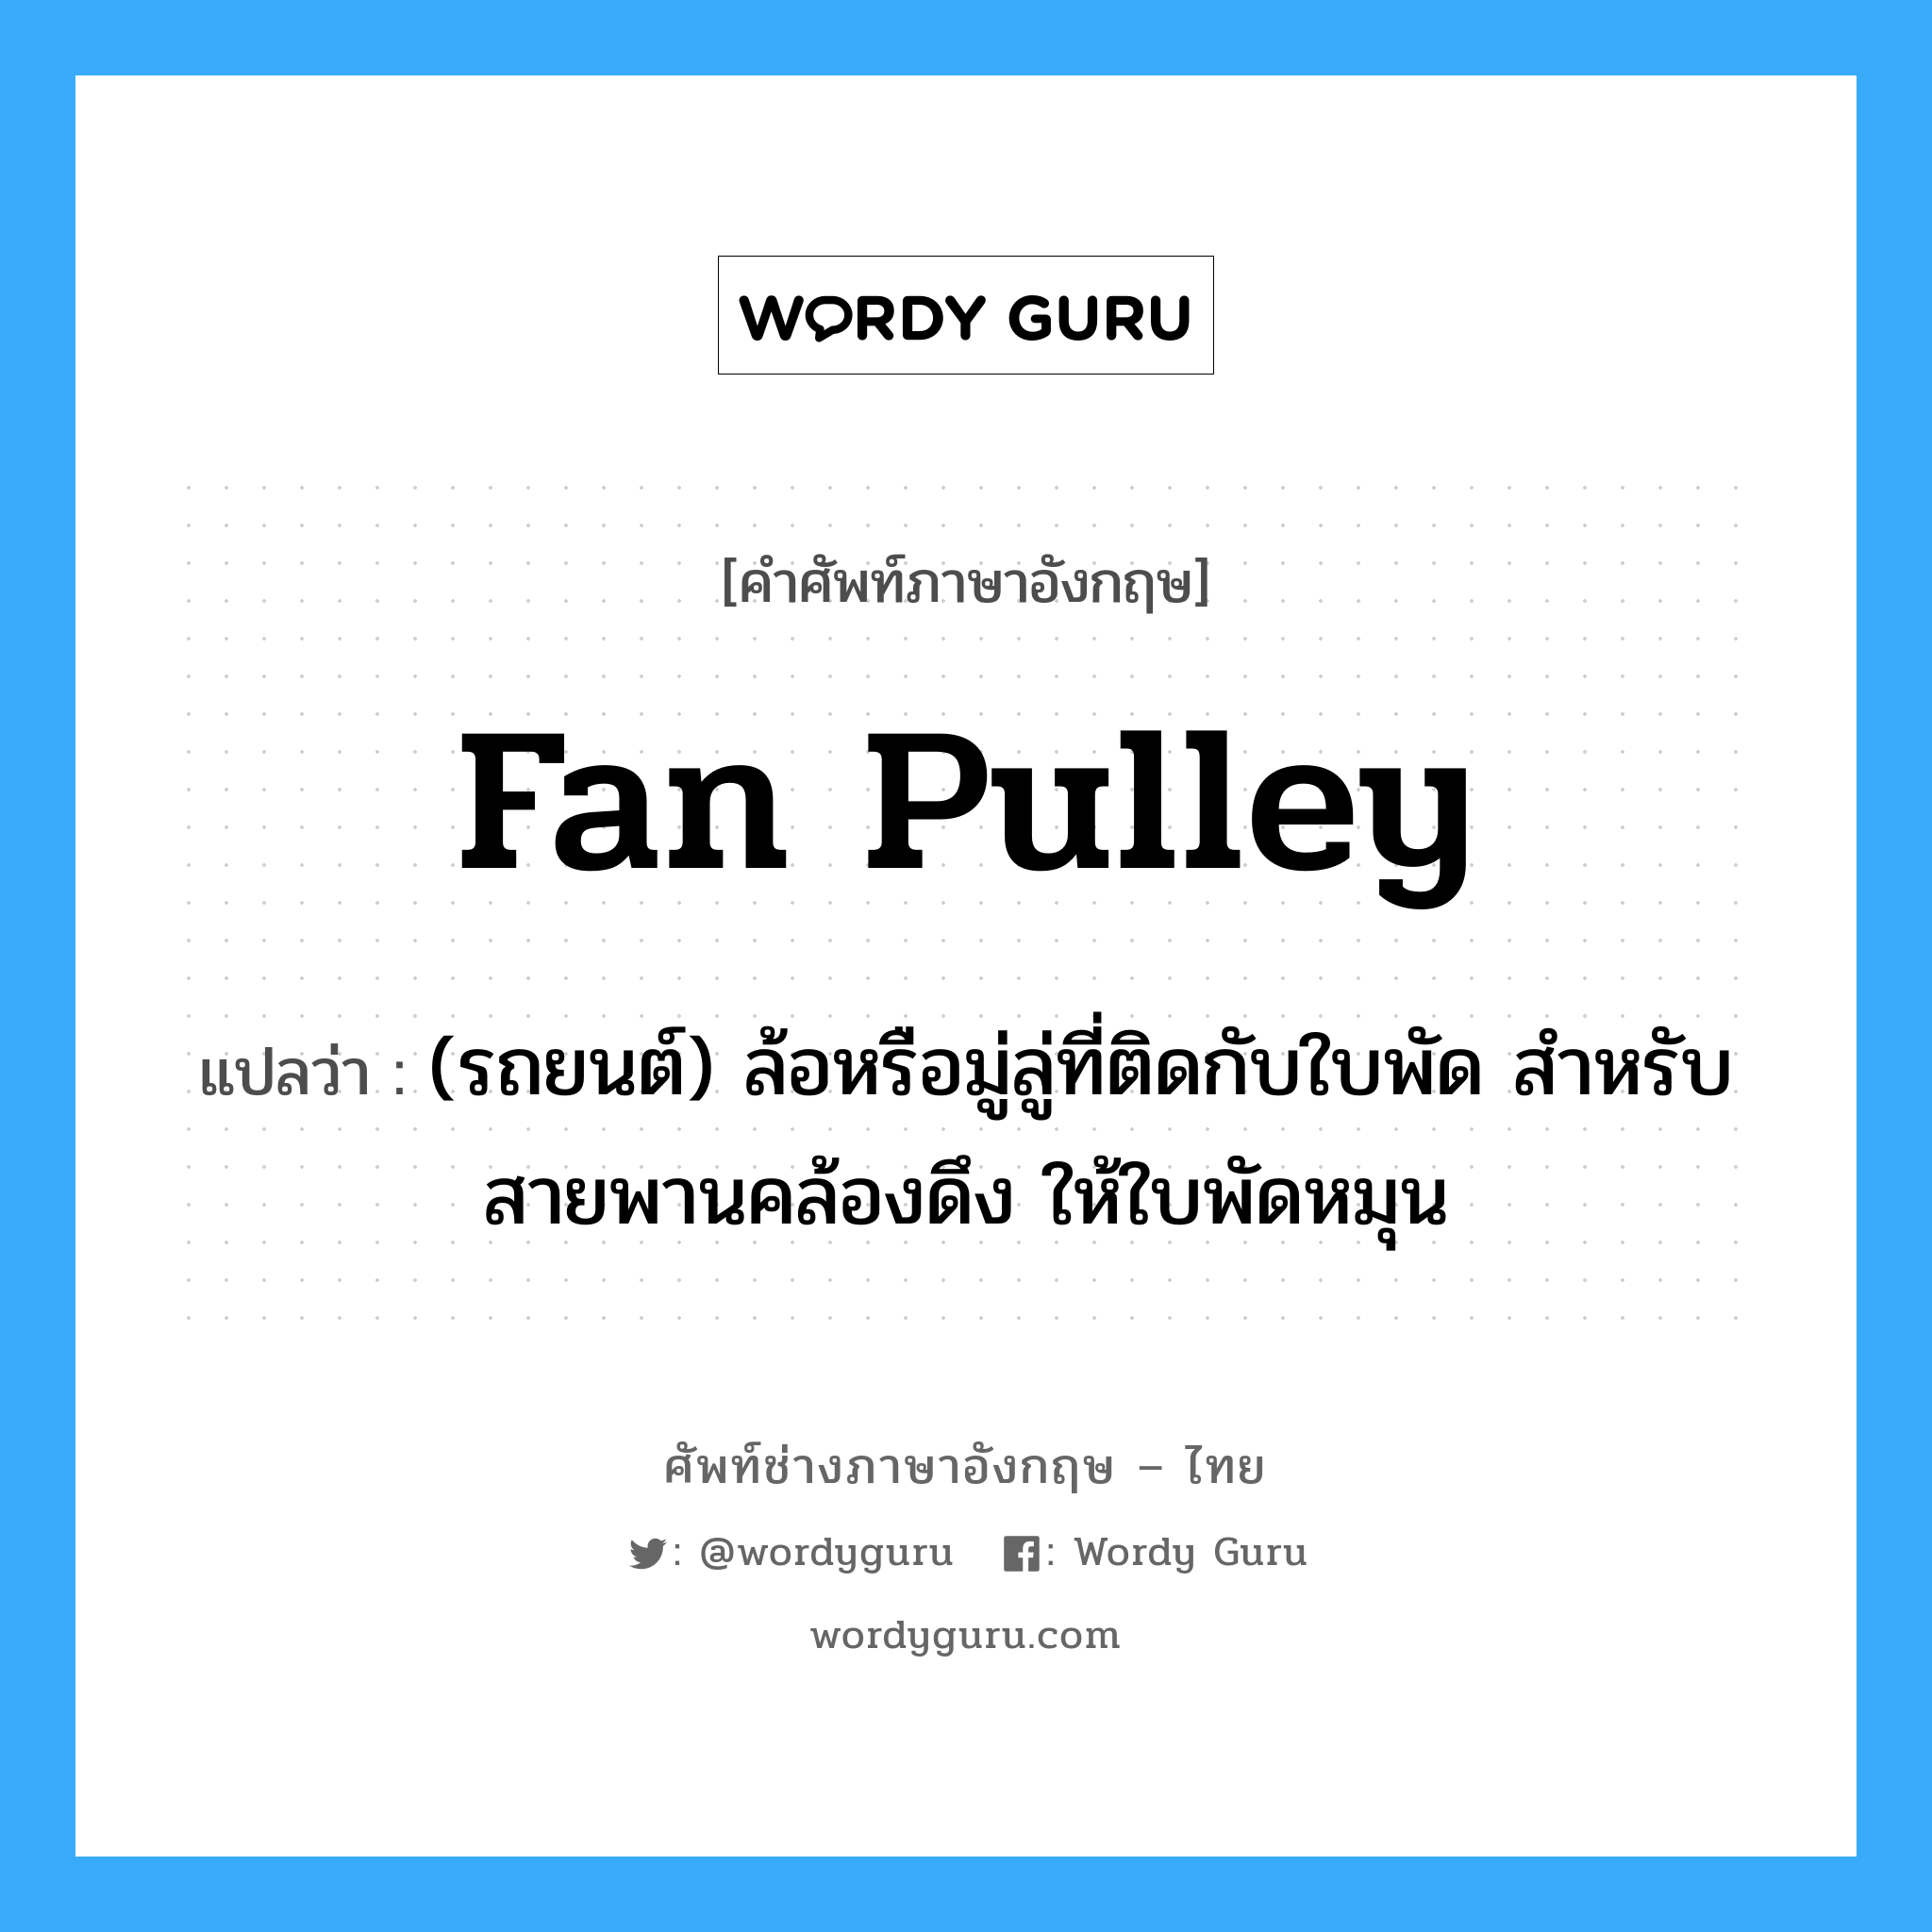 fan pulley แปลว่า?, คำศัพท์ช่างภาษาอังกฤษ - ไทย fan pulley คำศัพท์ภาษาอังกฤษ fan pulley แปลว่า (รถยนต์) ล้อหรือมู่ลู่ที่ติดกับใบพัด สำหรับสายพานคล้องดึง ให้ใบพัดหมุน